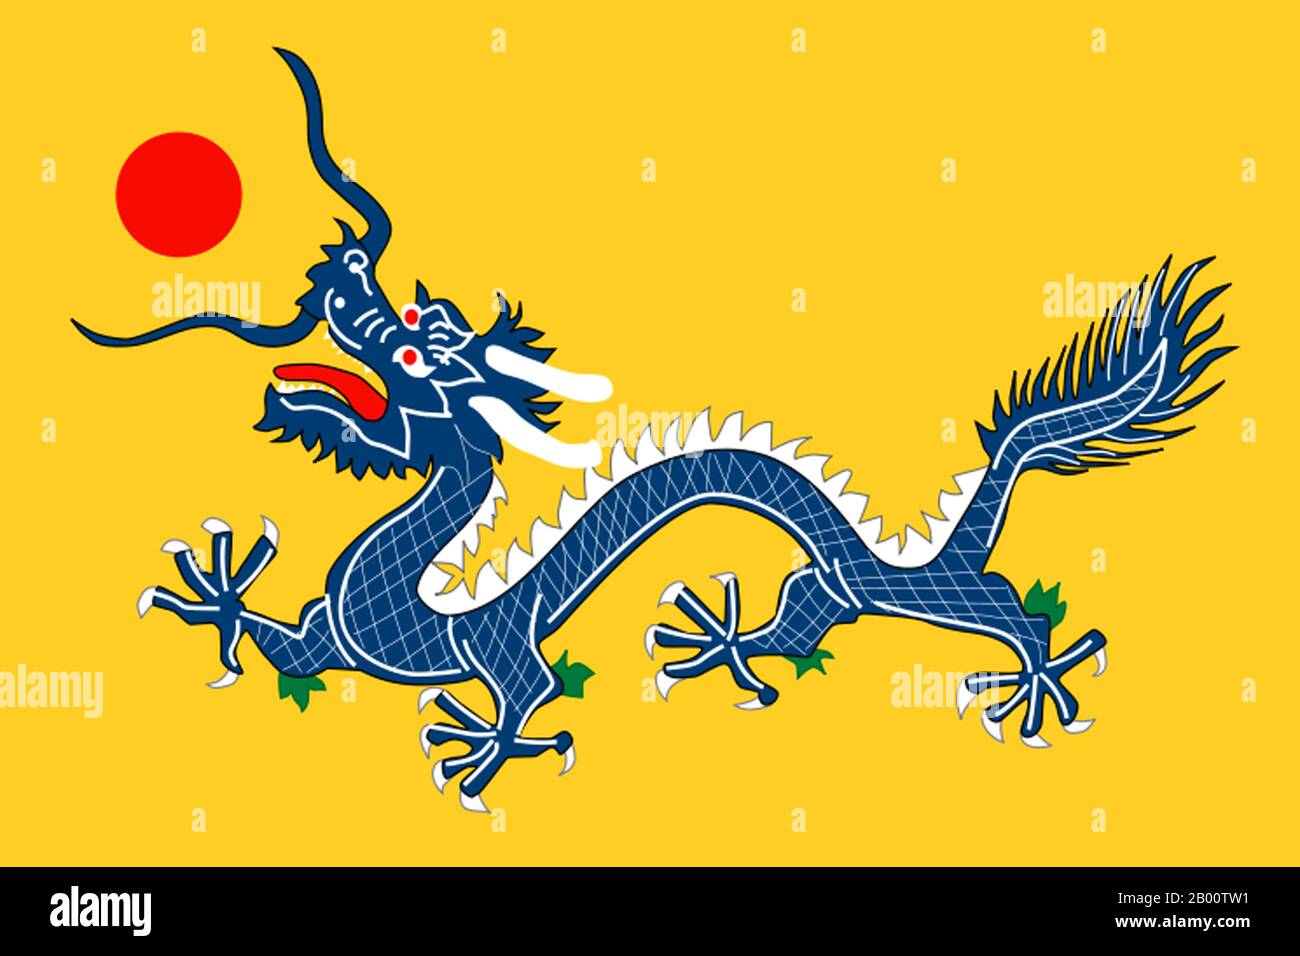 Chine : drapeau du dragon de la dynastie Qing (1889-1912), 1889. La dynastie Qing, également connue sous le nom de dynastie Manchu, était la dernière dynastie de Chine, régnant de 1644 à 1912 (avec une brève restauration abortive en 1917). Elle a été précédée par la dynastie Ming et suivie par la République de Chine. La dynastie a été fondée par le clan Manchu Aisin Gioro dans le nord-est moderne de la Chine (également connu sous le nom de Manchuria). À partir de 1644, il s'est étendu à la Chine proprement dite et à ses territoires environnants, établissant l'Empire du Grand. La pacification complète de la Chine a été accomplie vers 1683 sous l'empereur Kangxi. Banque D'Images